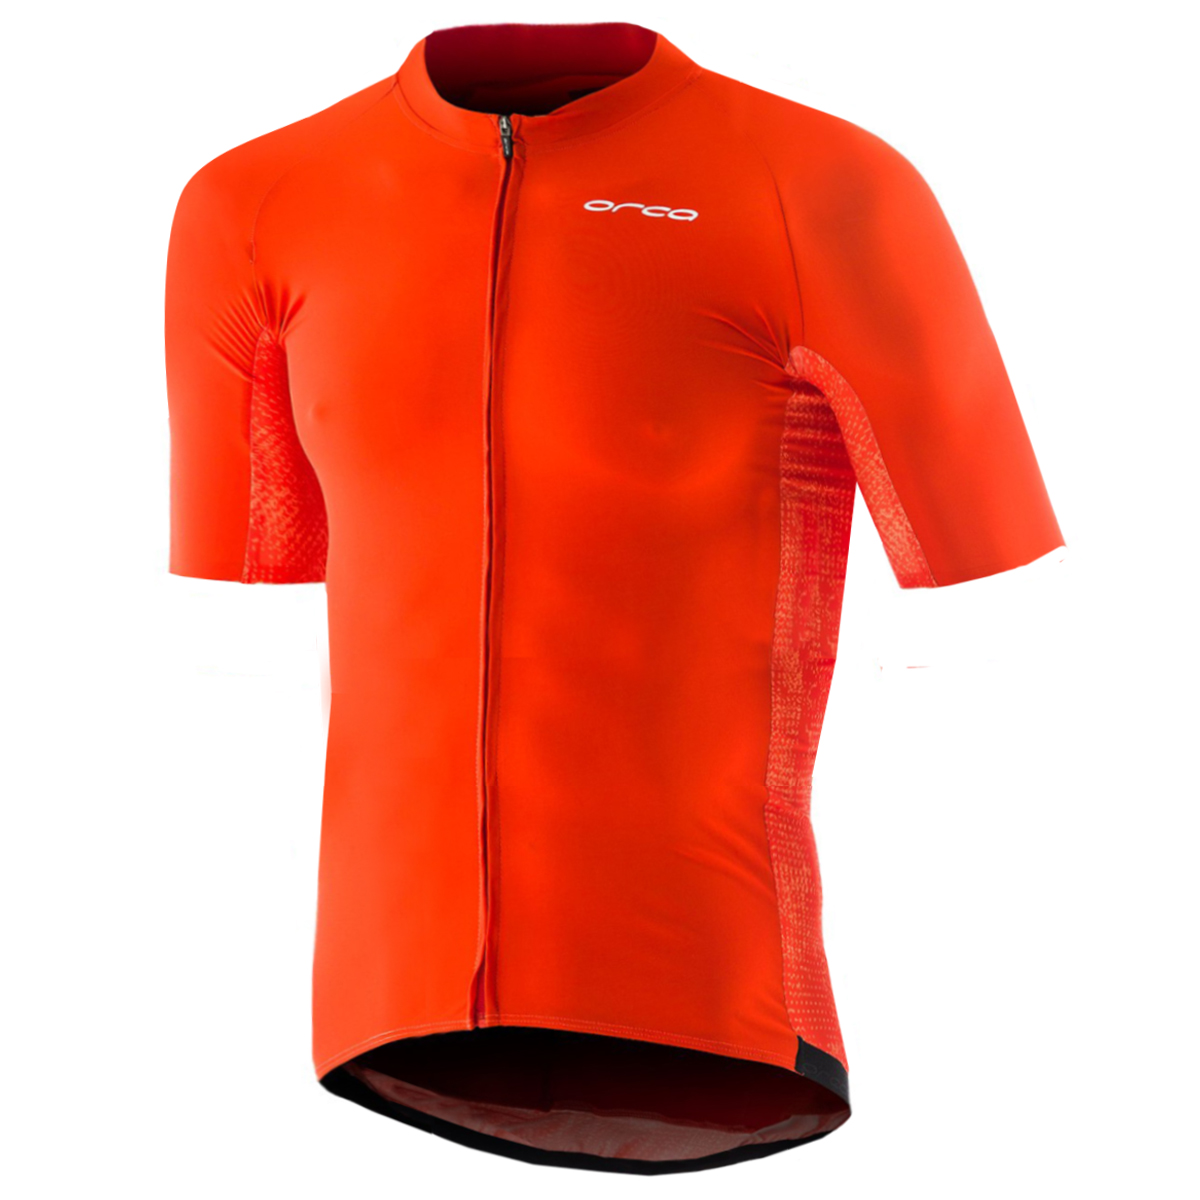 Produktbild von Orca Cycling Jersey - high vis orange